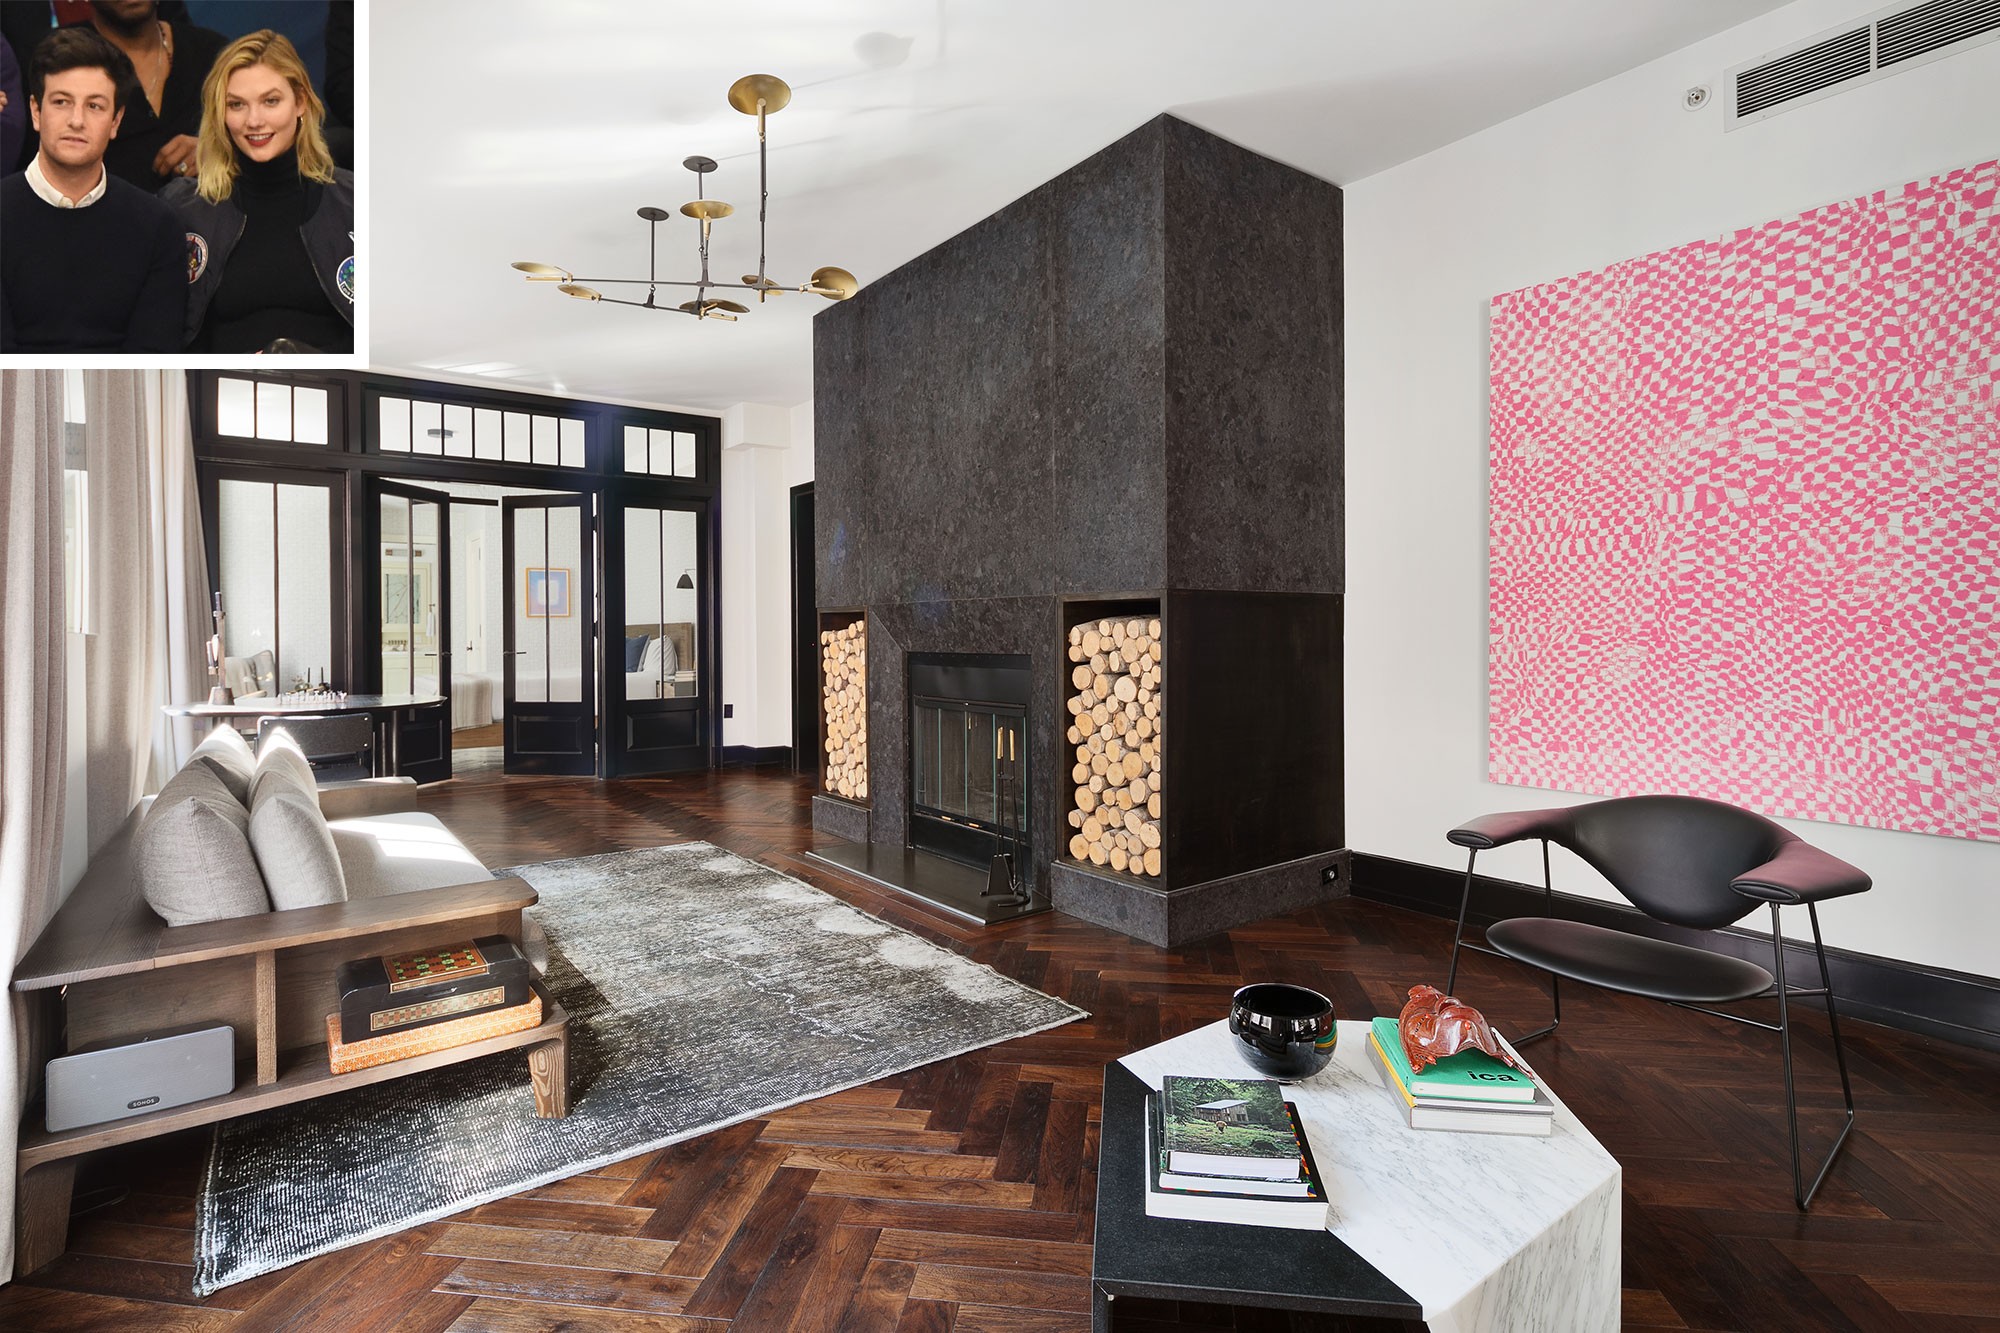 Apartamento de Karlie Kloss e Joshua Kushner em Nova Iorque (Foto: Divulgação)